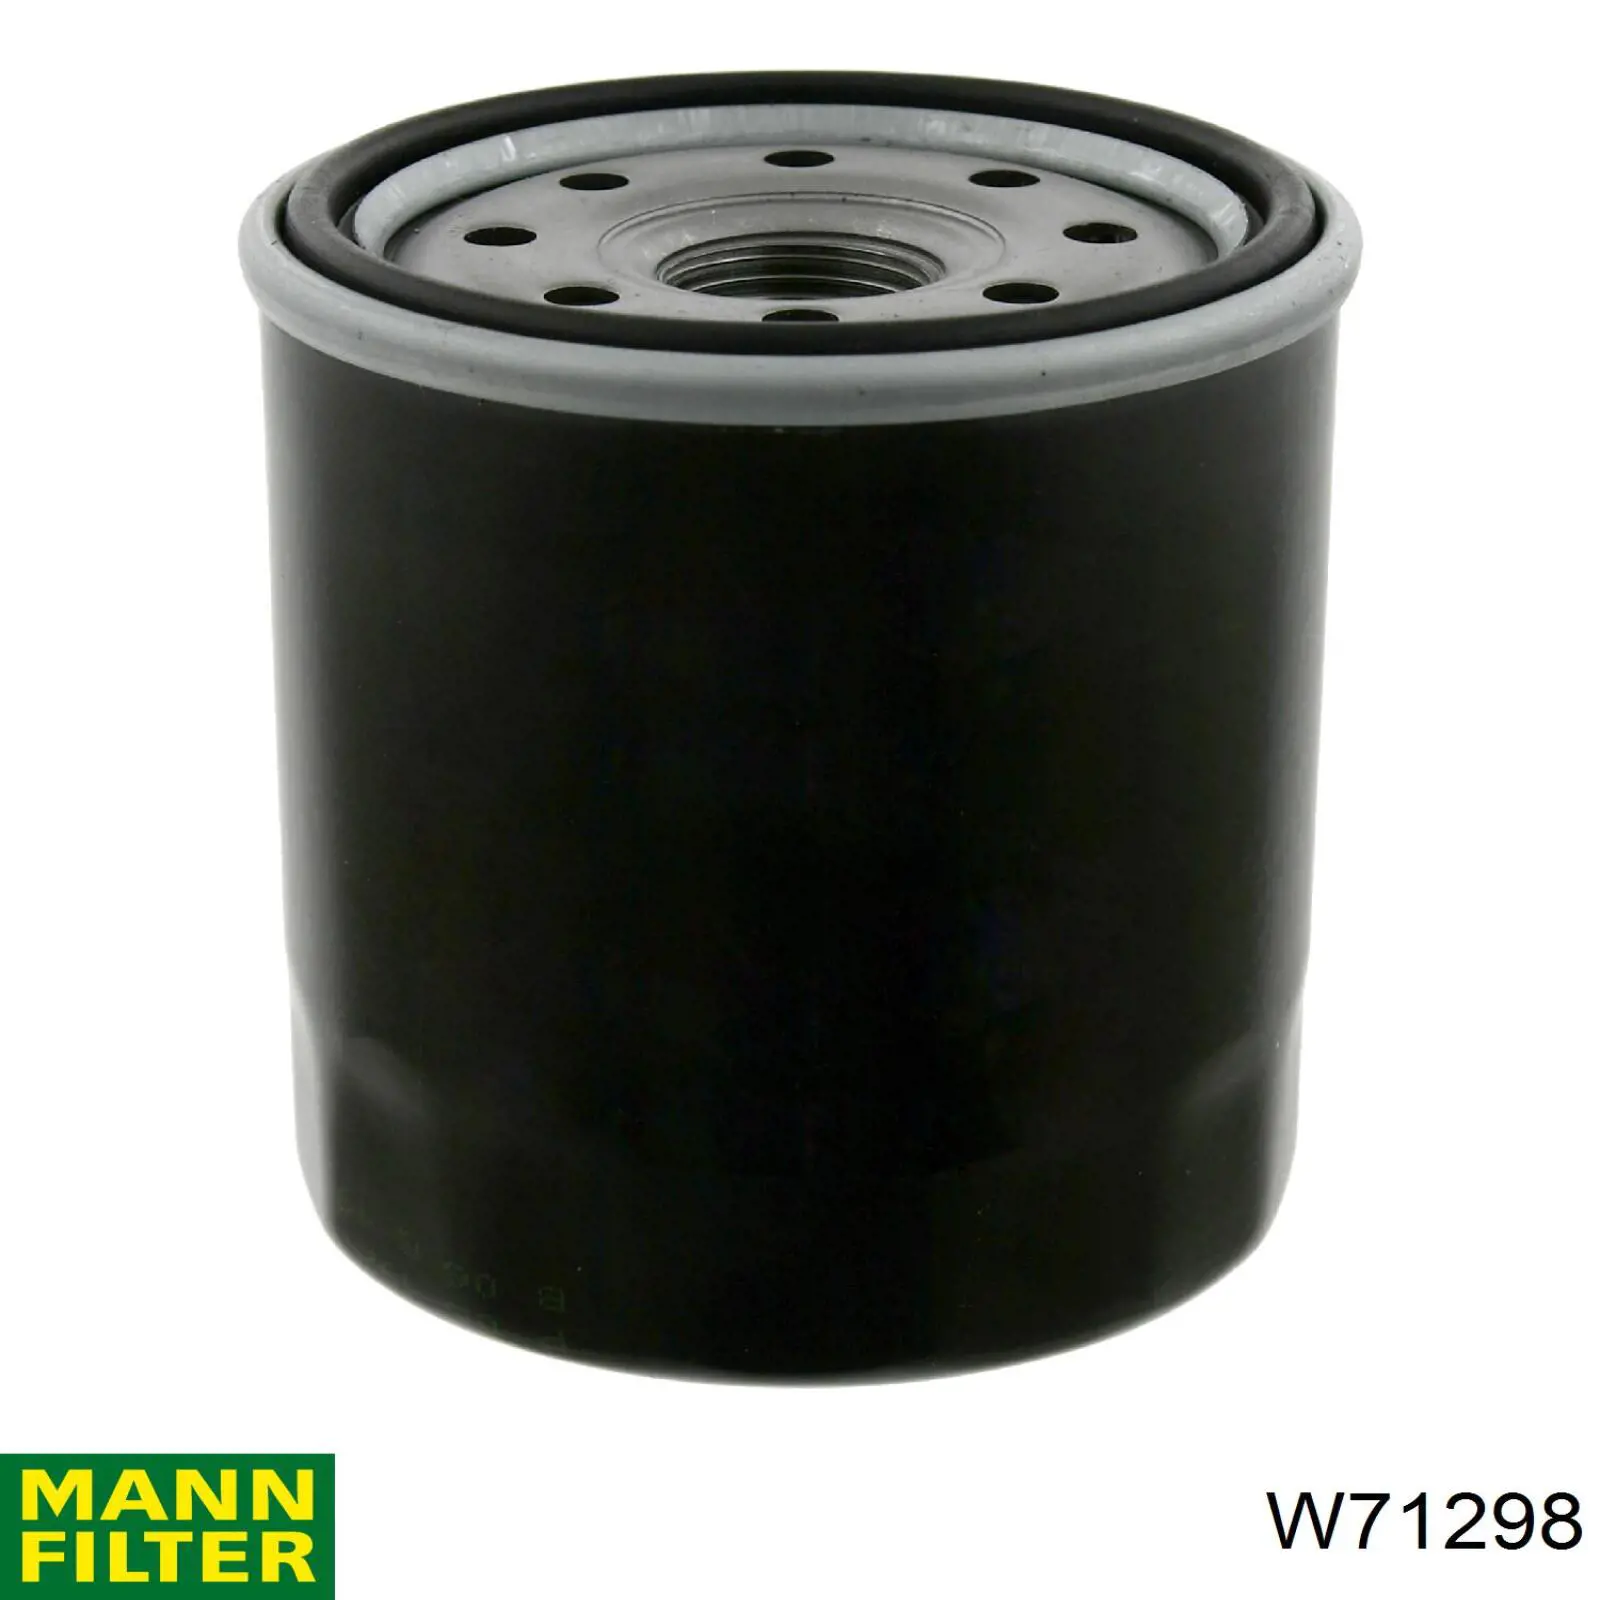 Filtro de aceite W71298 Mann-Filter